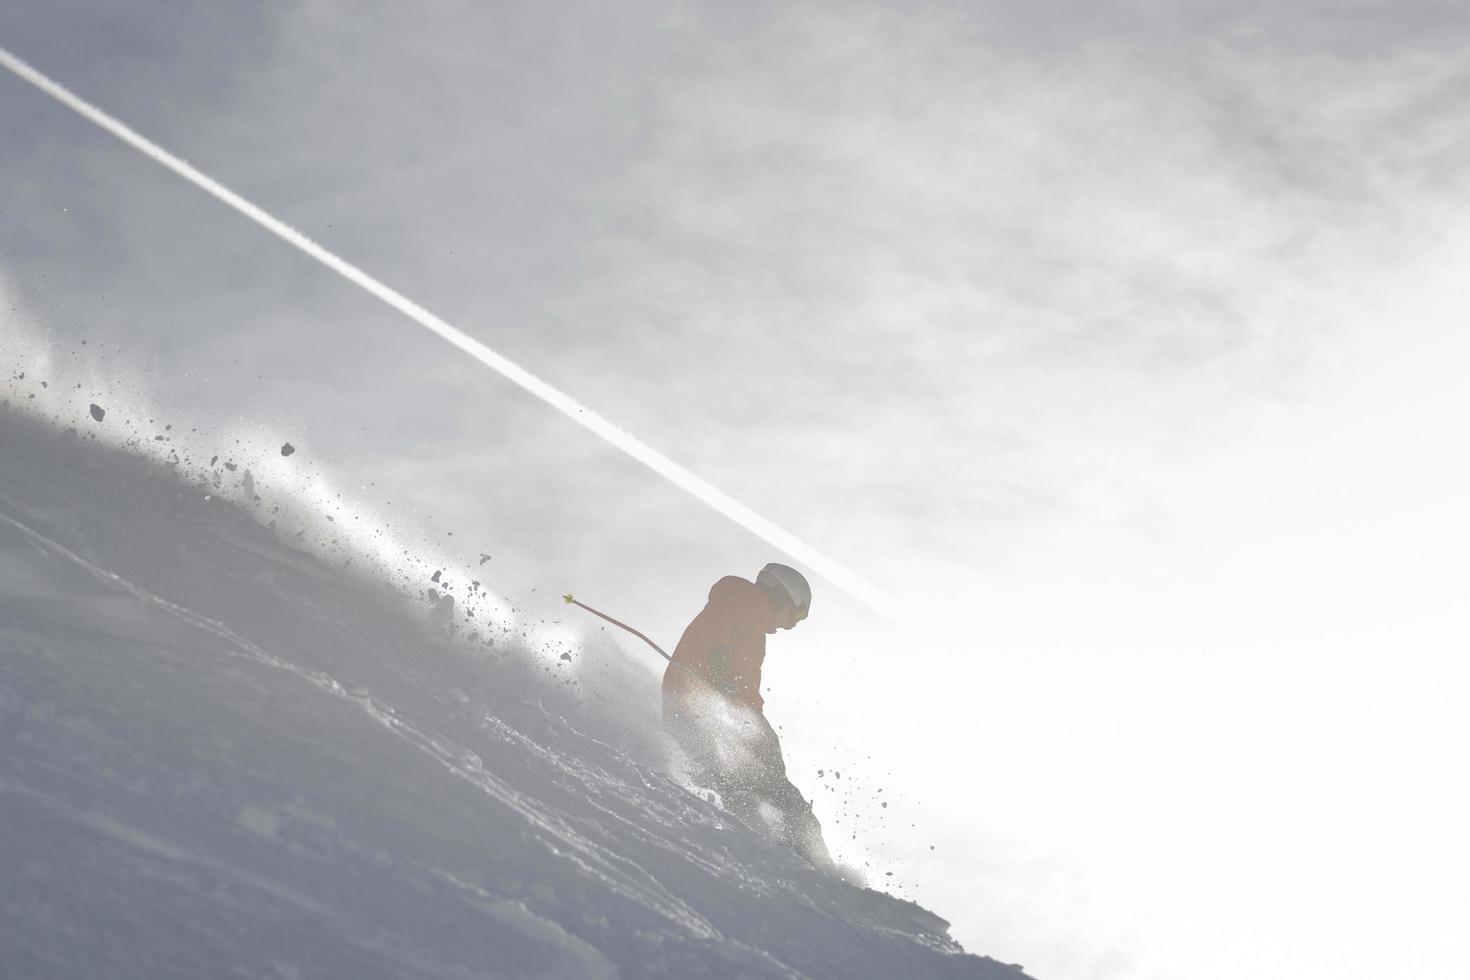 skier en saison d'hiver photo